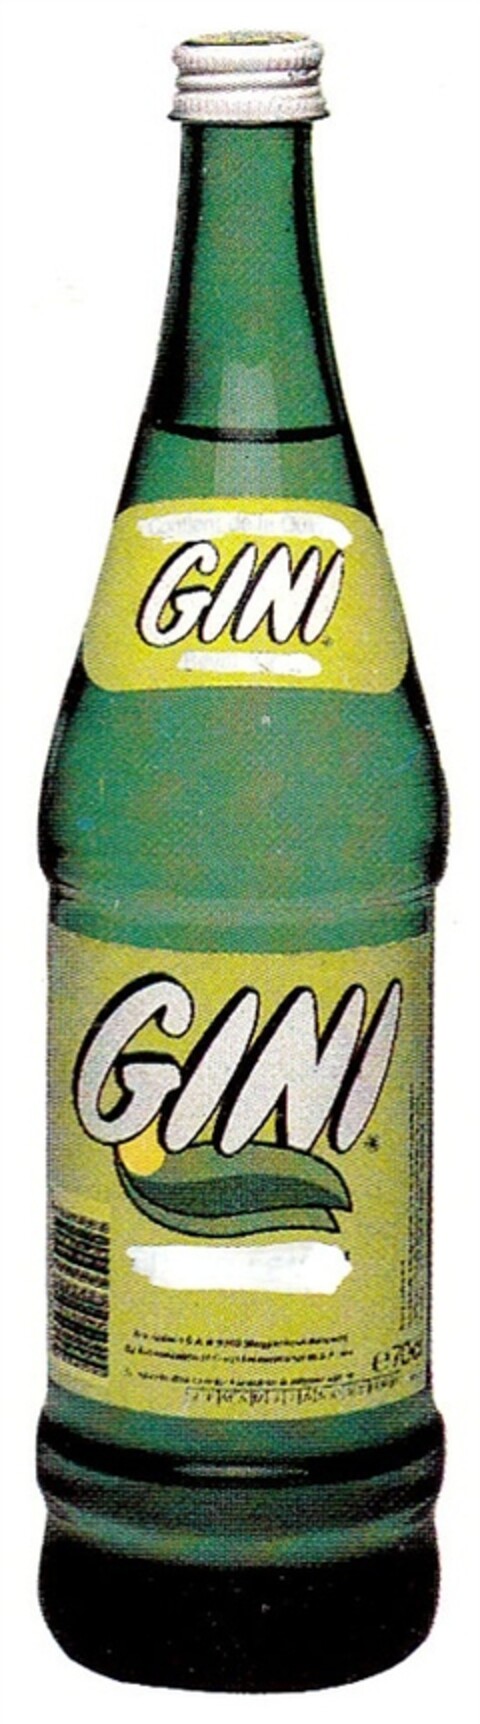 GINI GINI Logo (DPMA, 31.12.1983)